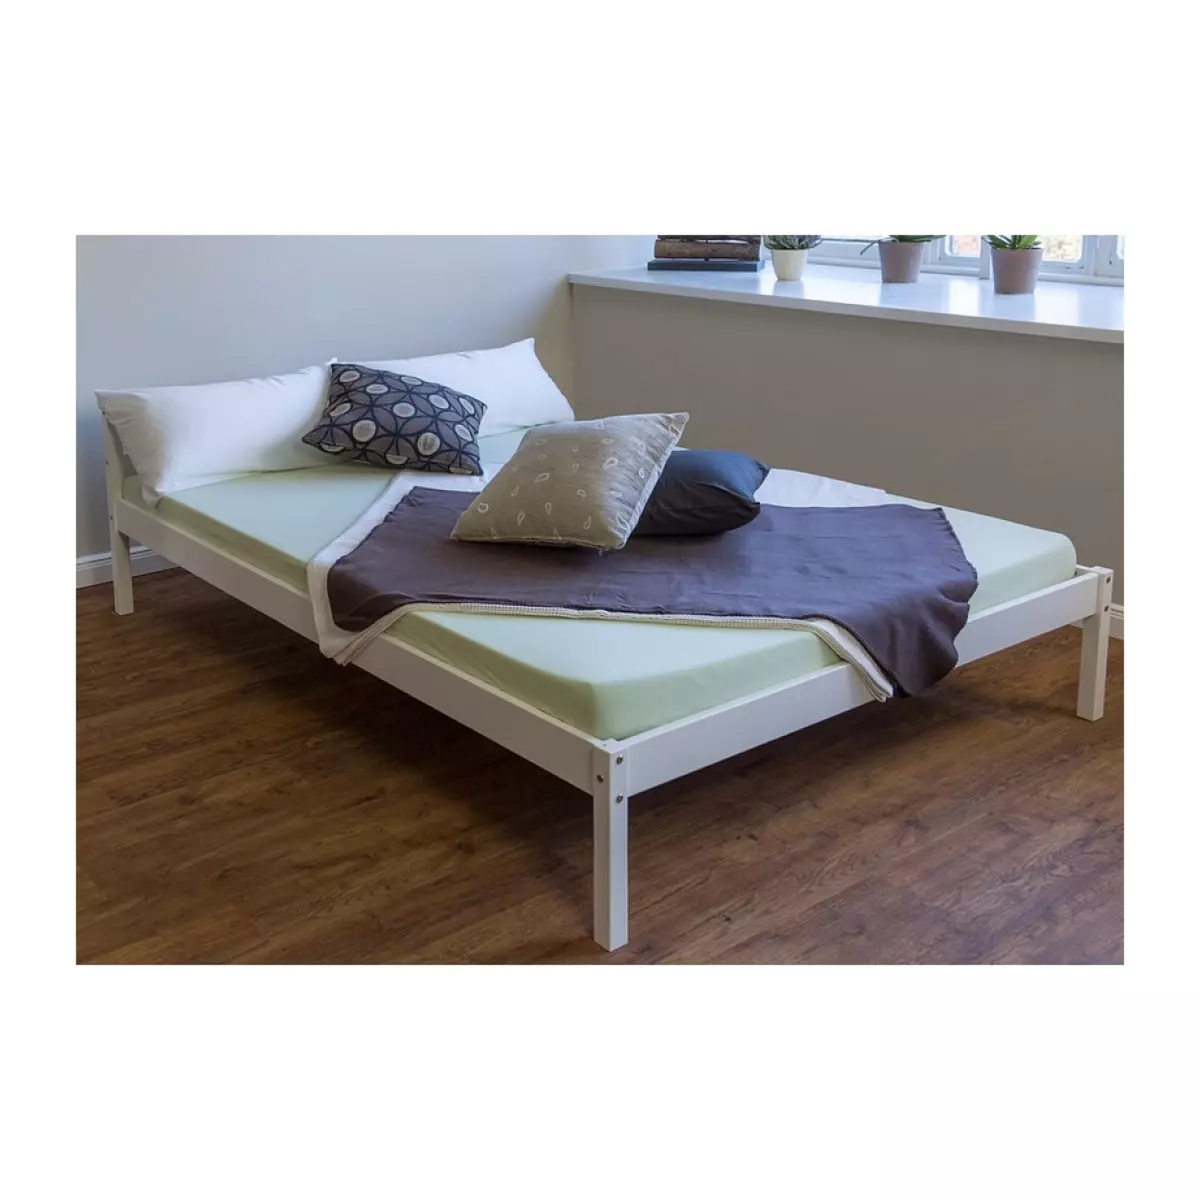 HomeStyle4U Lit en bois massif lit lit de 200 x 140 blanc nouvelle a lattes cadre